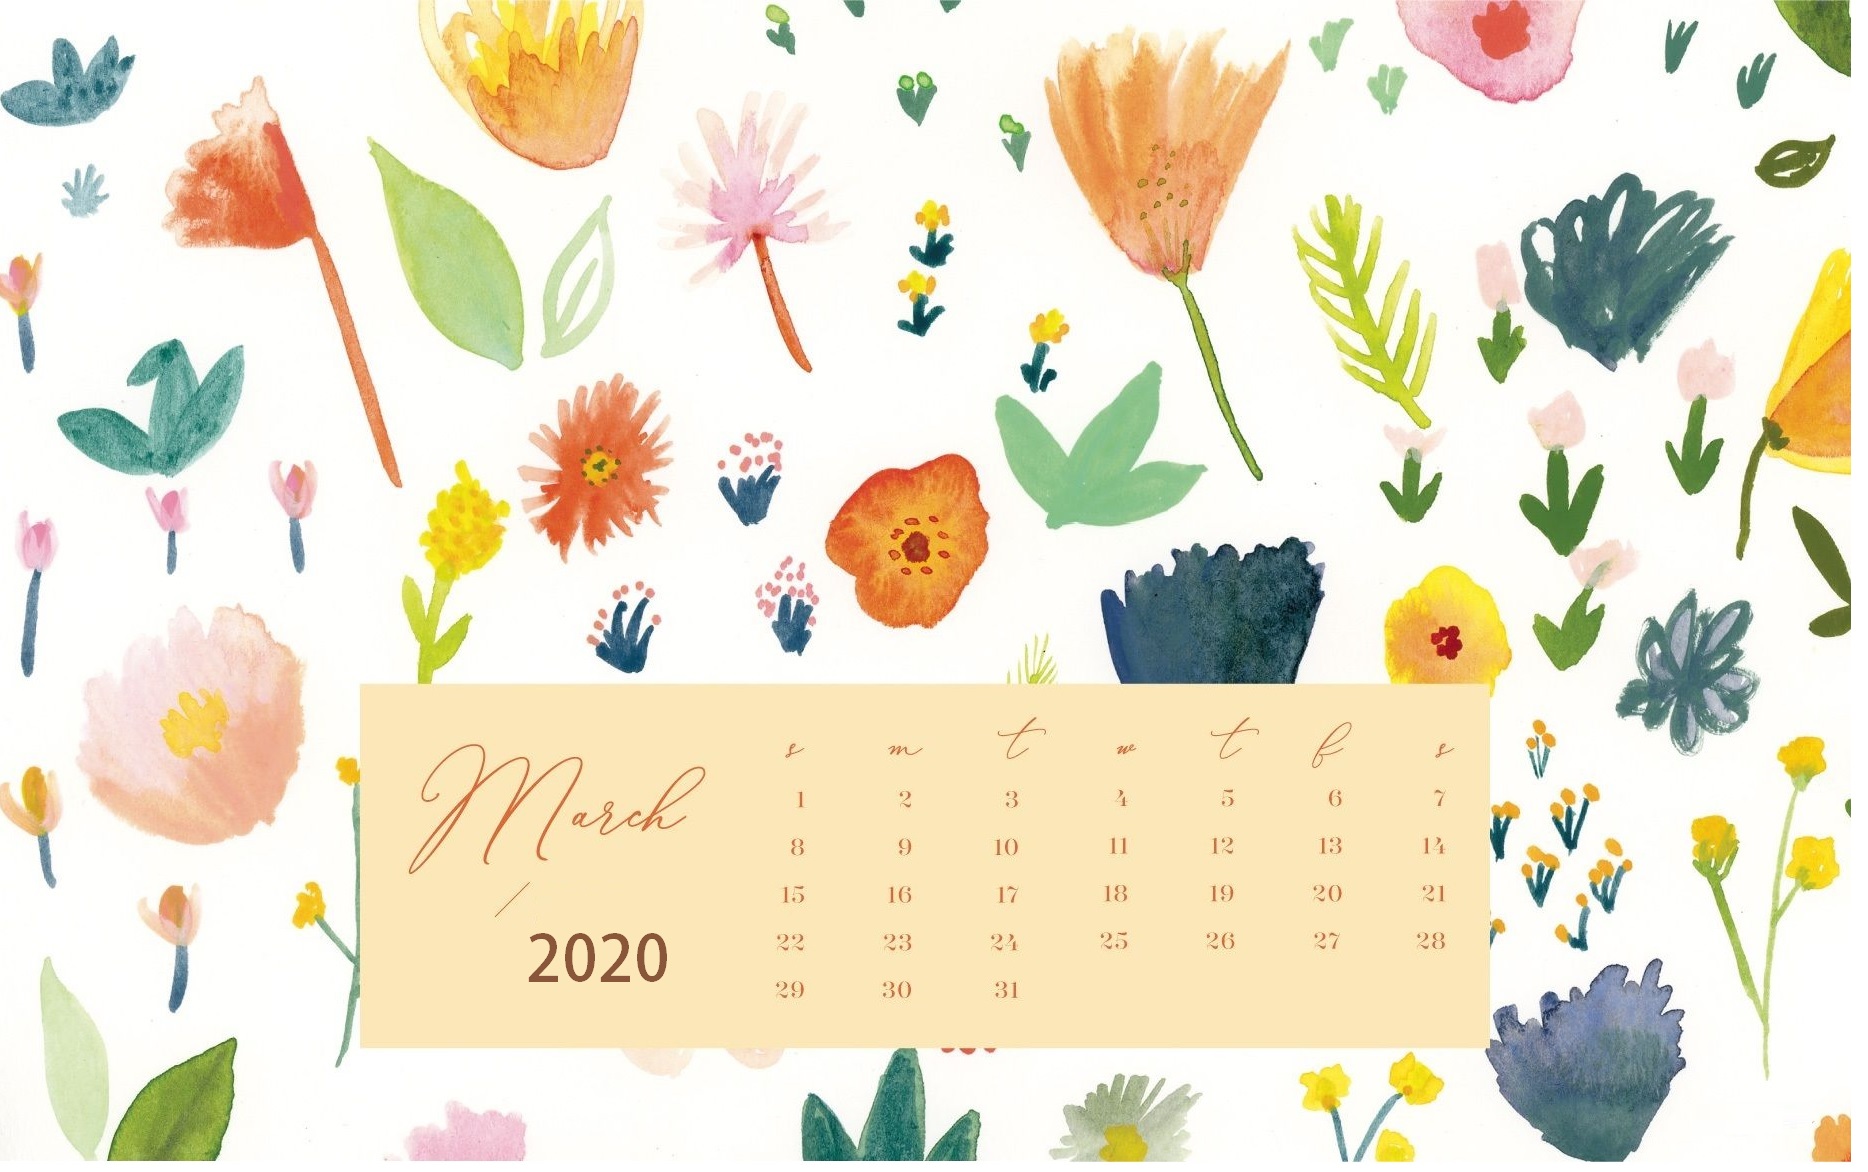 March 2020 Desktop Wallpaper - February 2020 Calendar Desktop - HD Wallpaper 